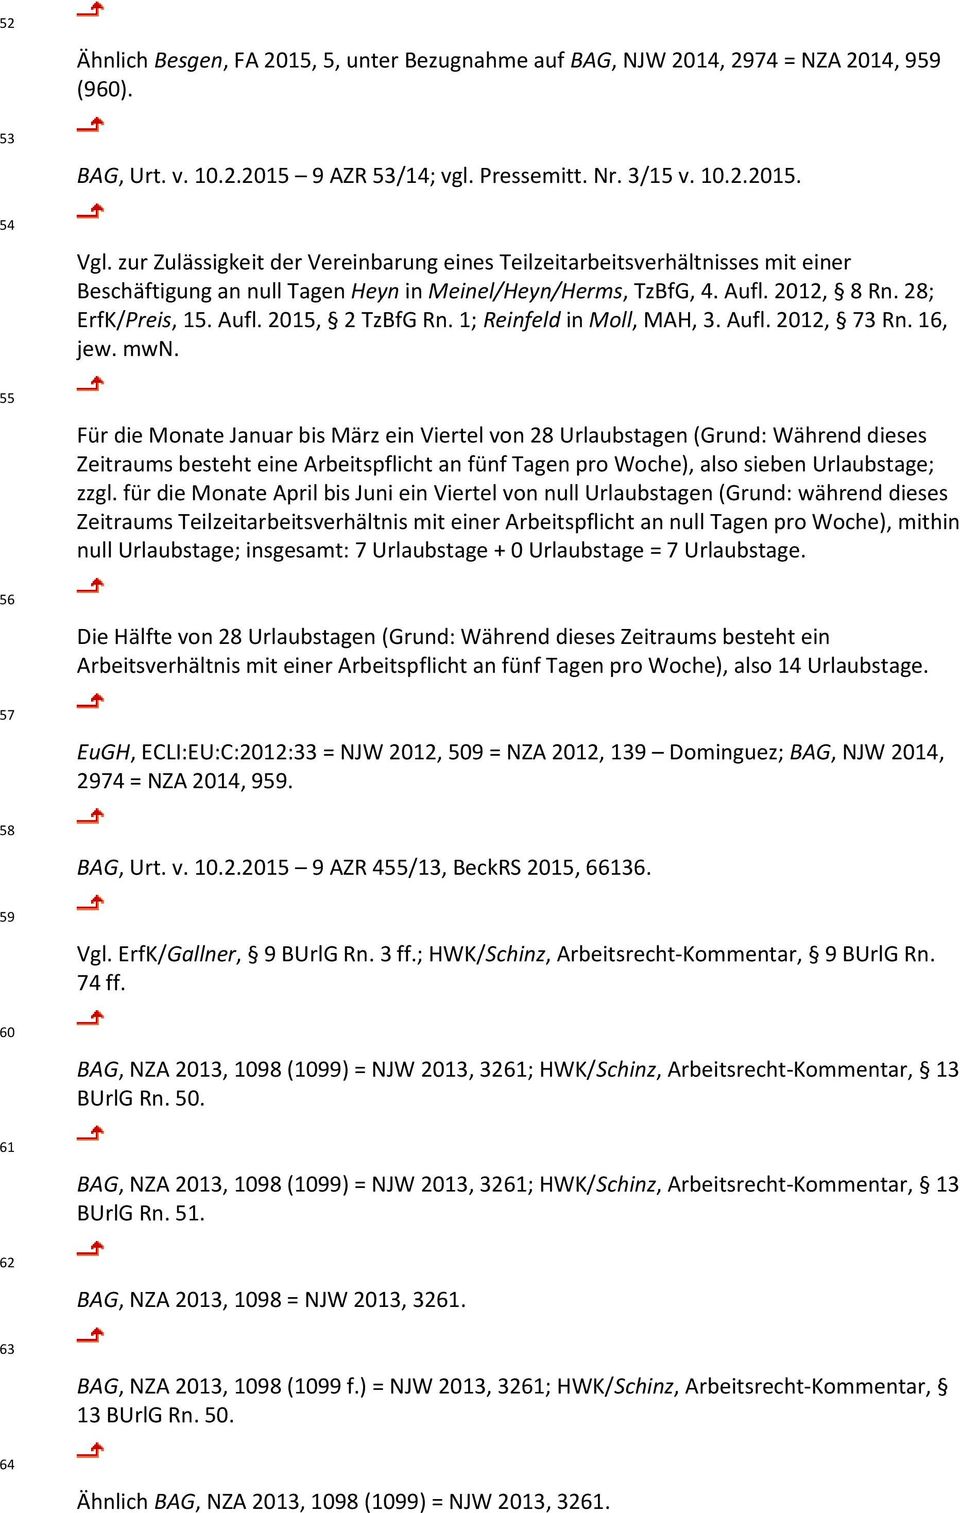 1; Reinfeld in Moll, MAH, 3. Aufl. 2012, 73 Rn. 16, jew. mwn.